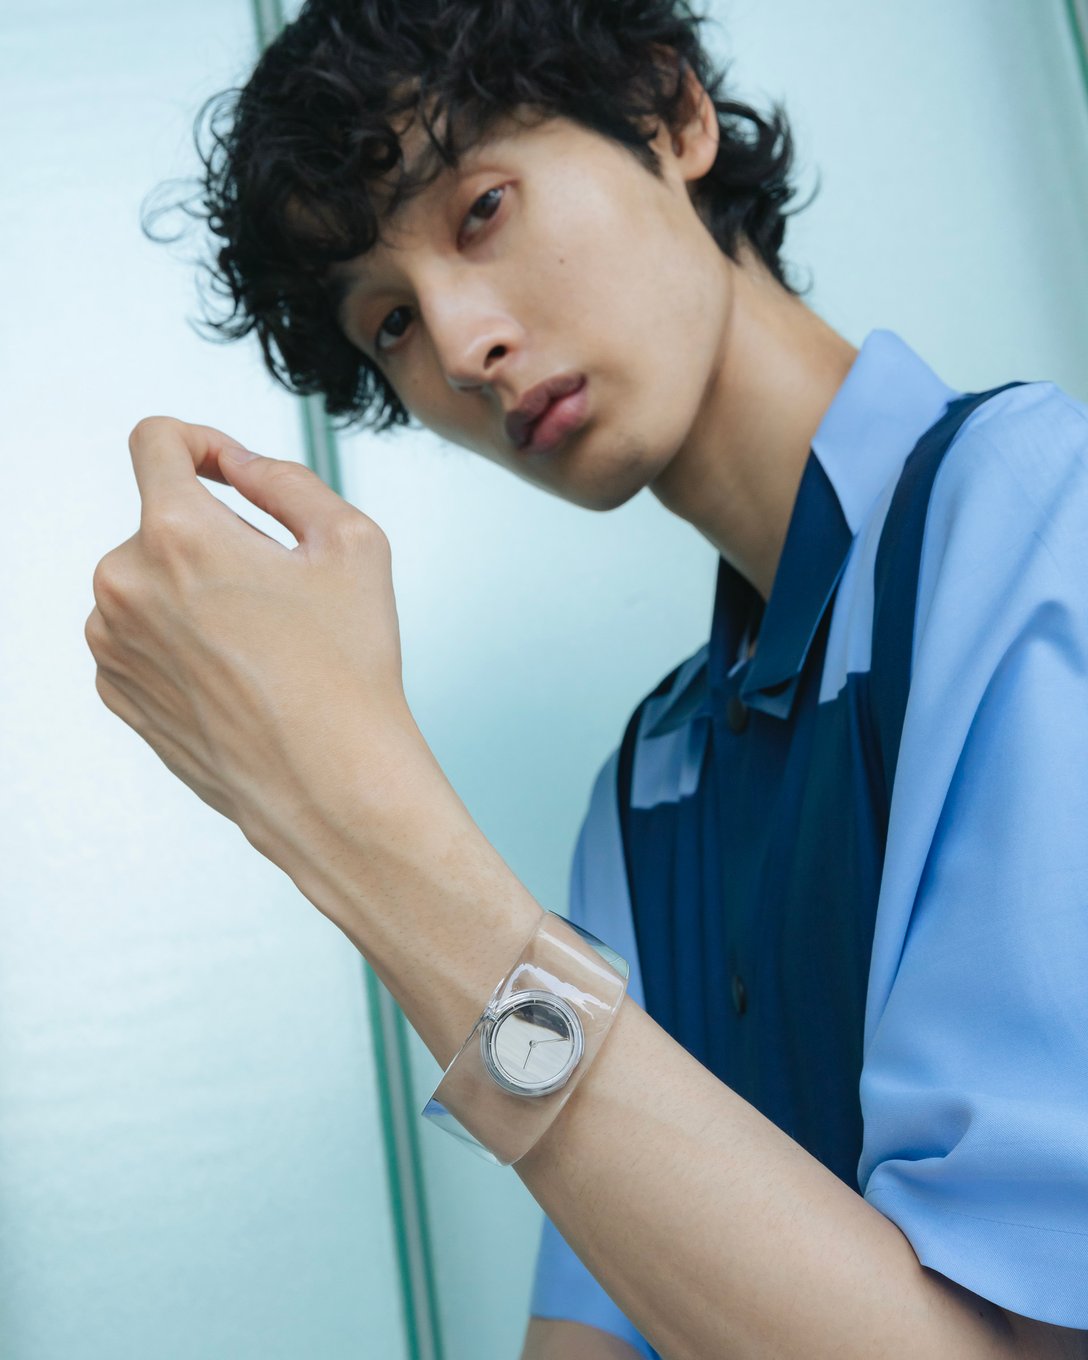 イッセイ ミヤケ ウオッチ「O」、透明な時計で作るサマースタイル